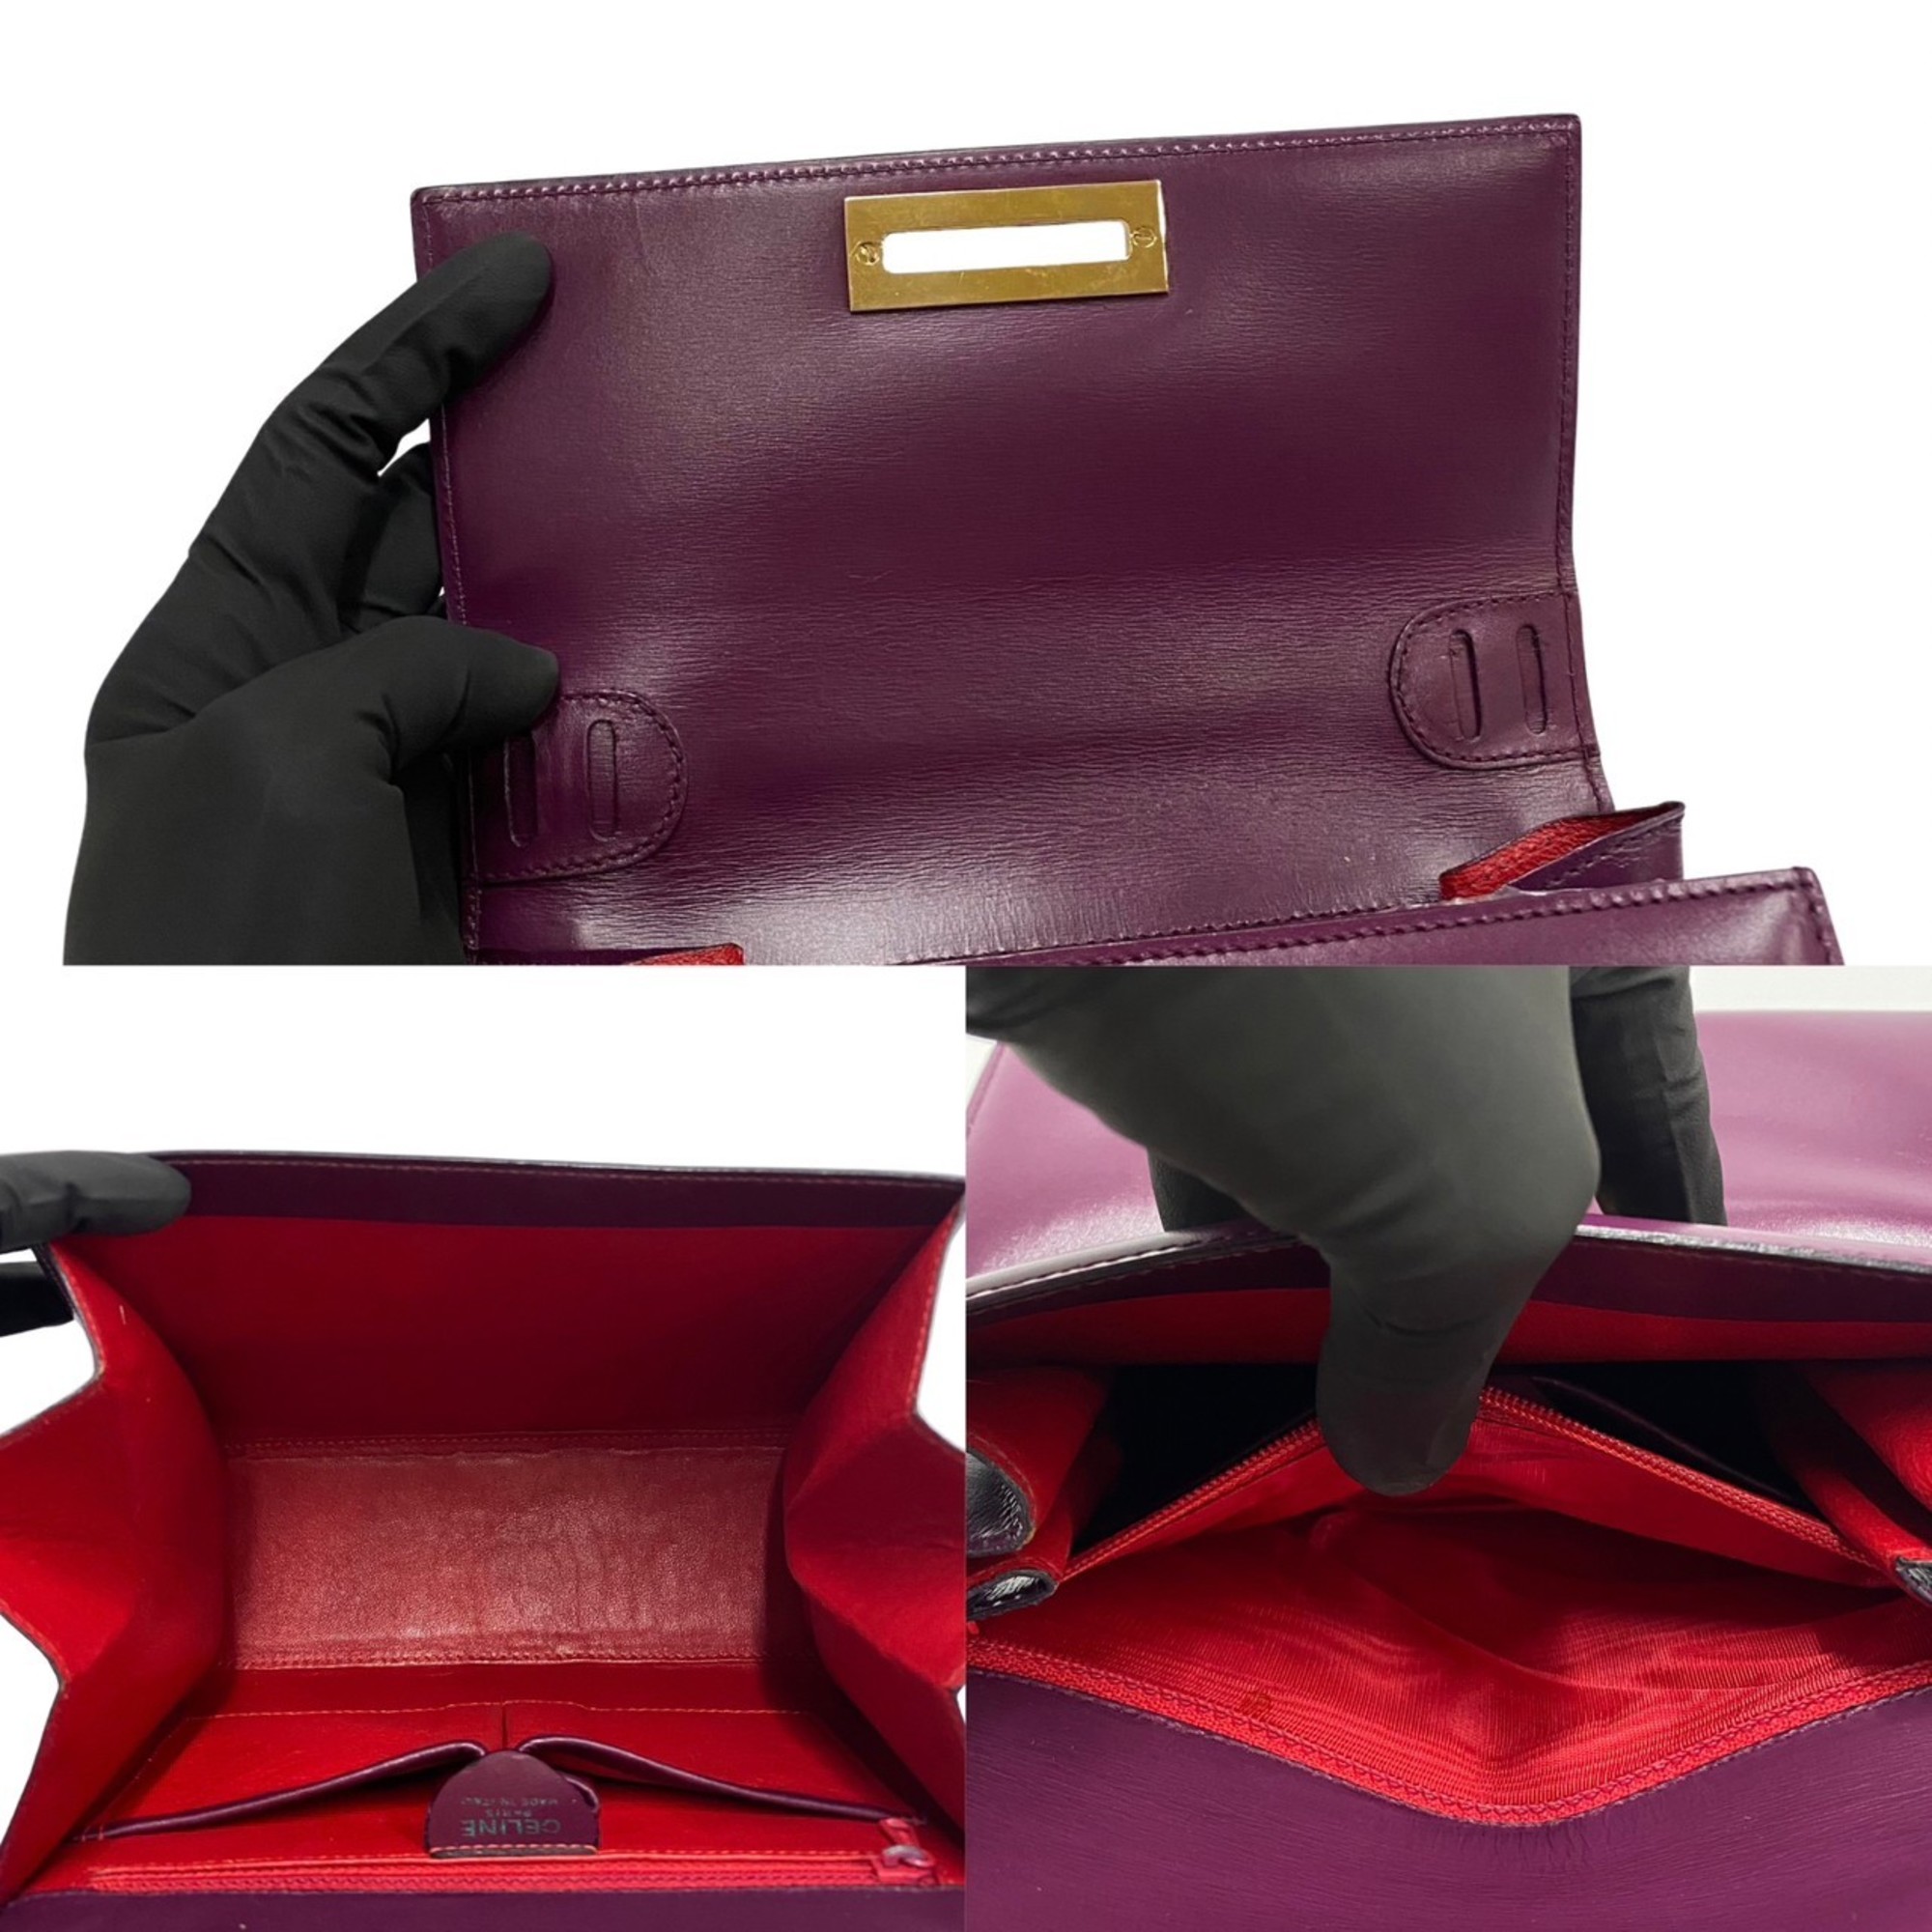 CELINE Vintage Logo Hardware Leather Genuine 2way Handbag Shoulder Bag Purple